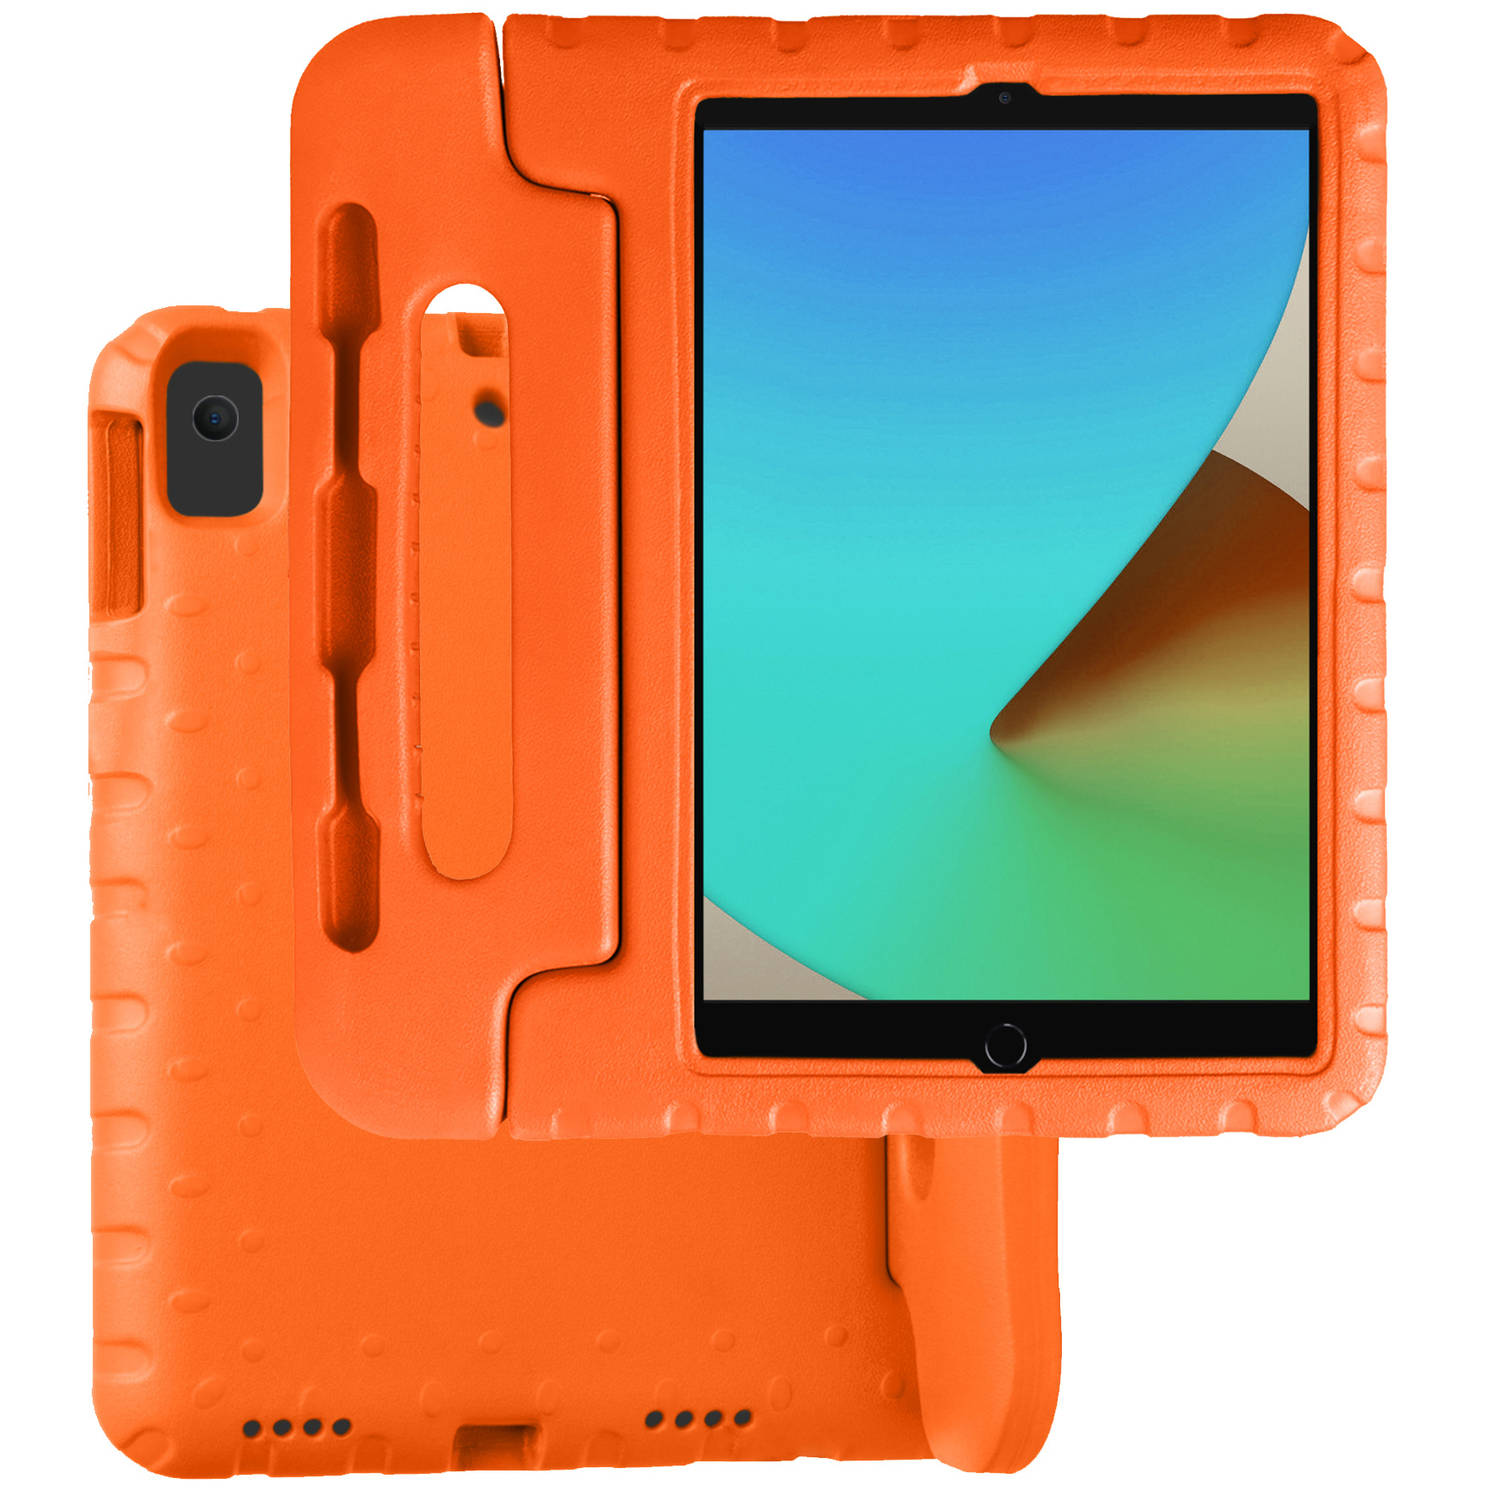 Basey iPad 10.2 2019 Hoesje Kinder Hoes Shockproof Cover - Kindvriendelijke iPad 10.2 2019 Hoes Kids Case - Oranje